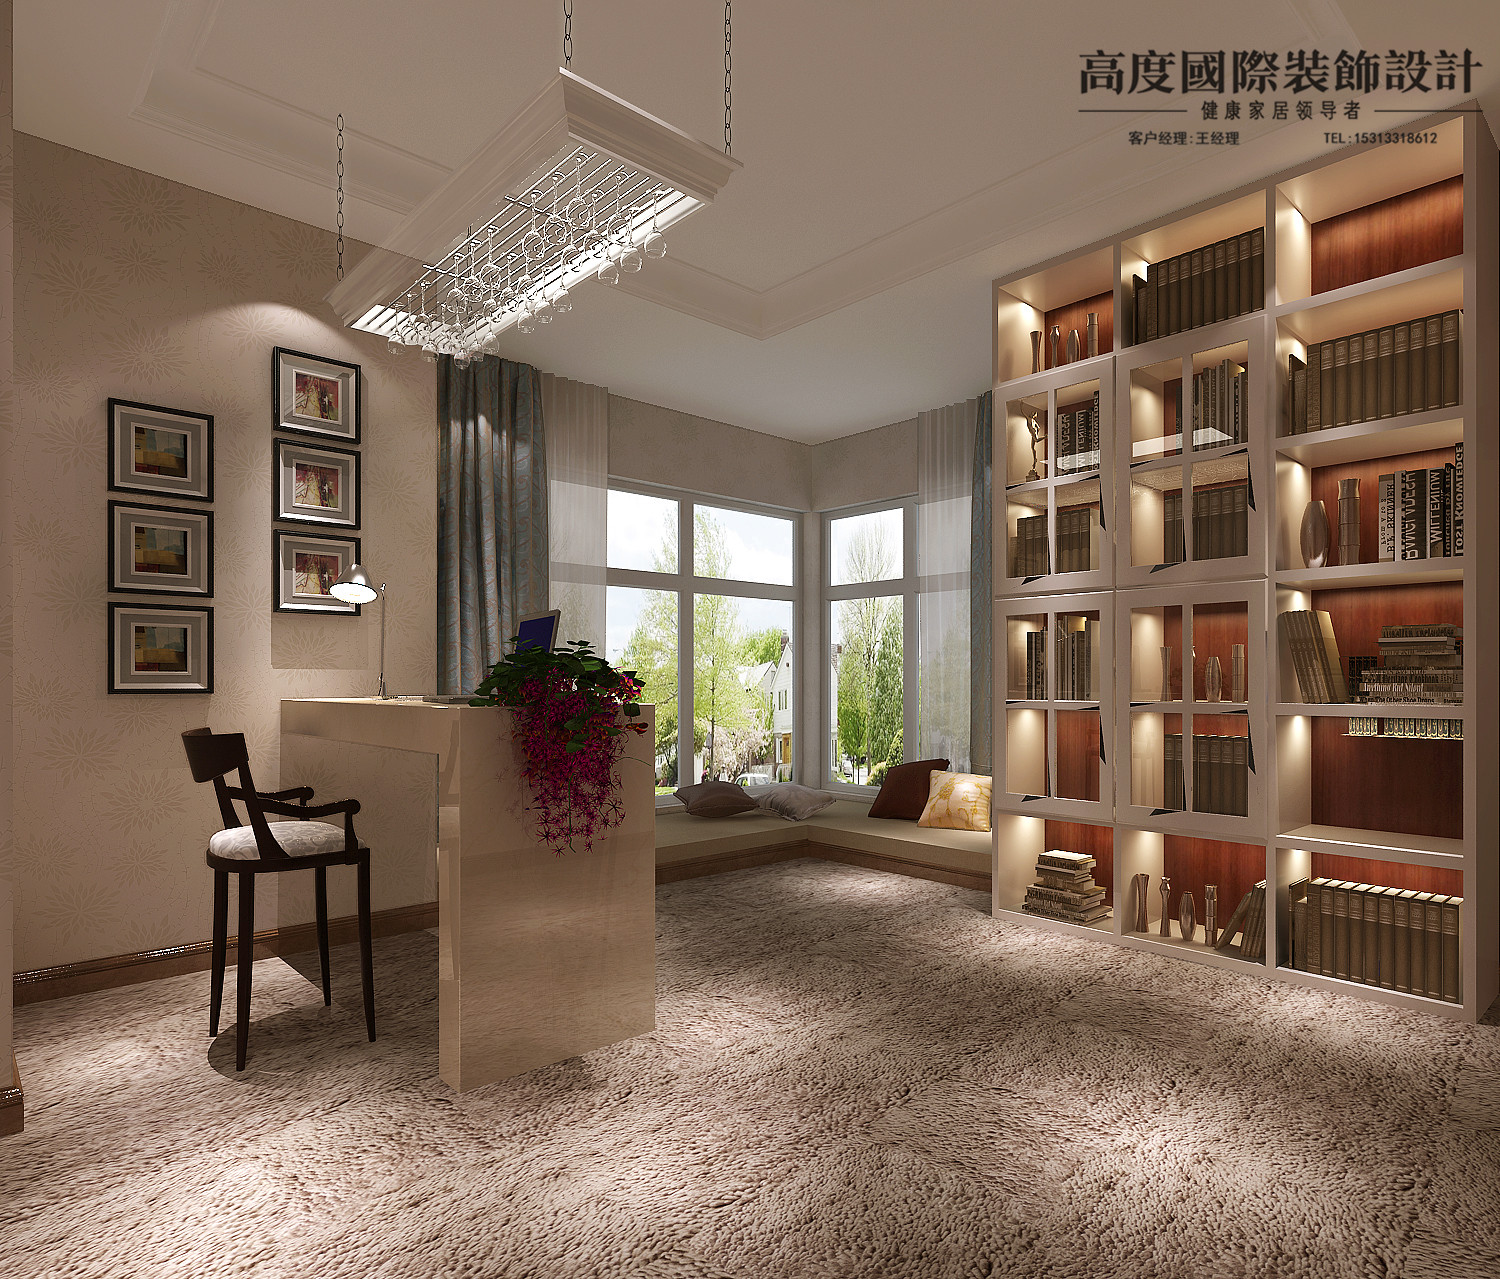 简约 欧式 三居 书房图片来自北京高度国际装饰在御翠尚府142平米简欧风格的分享